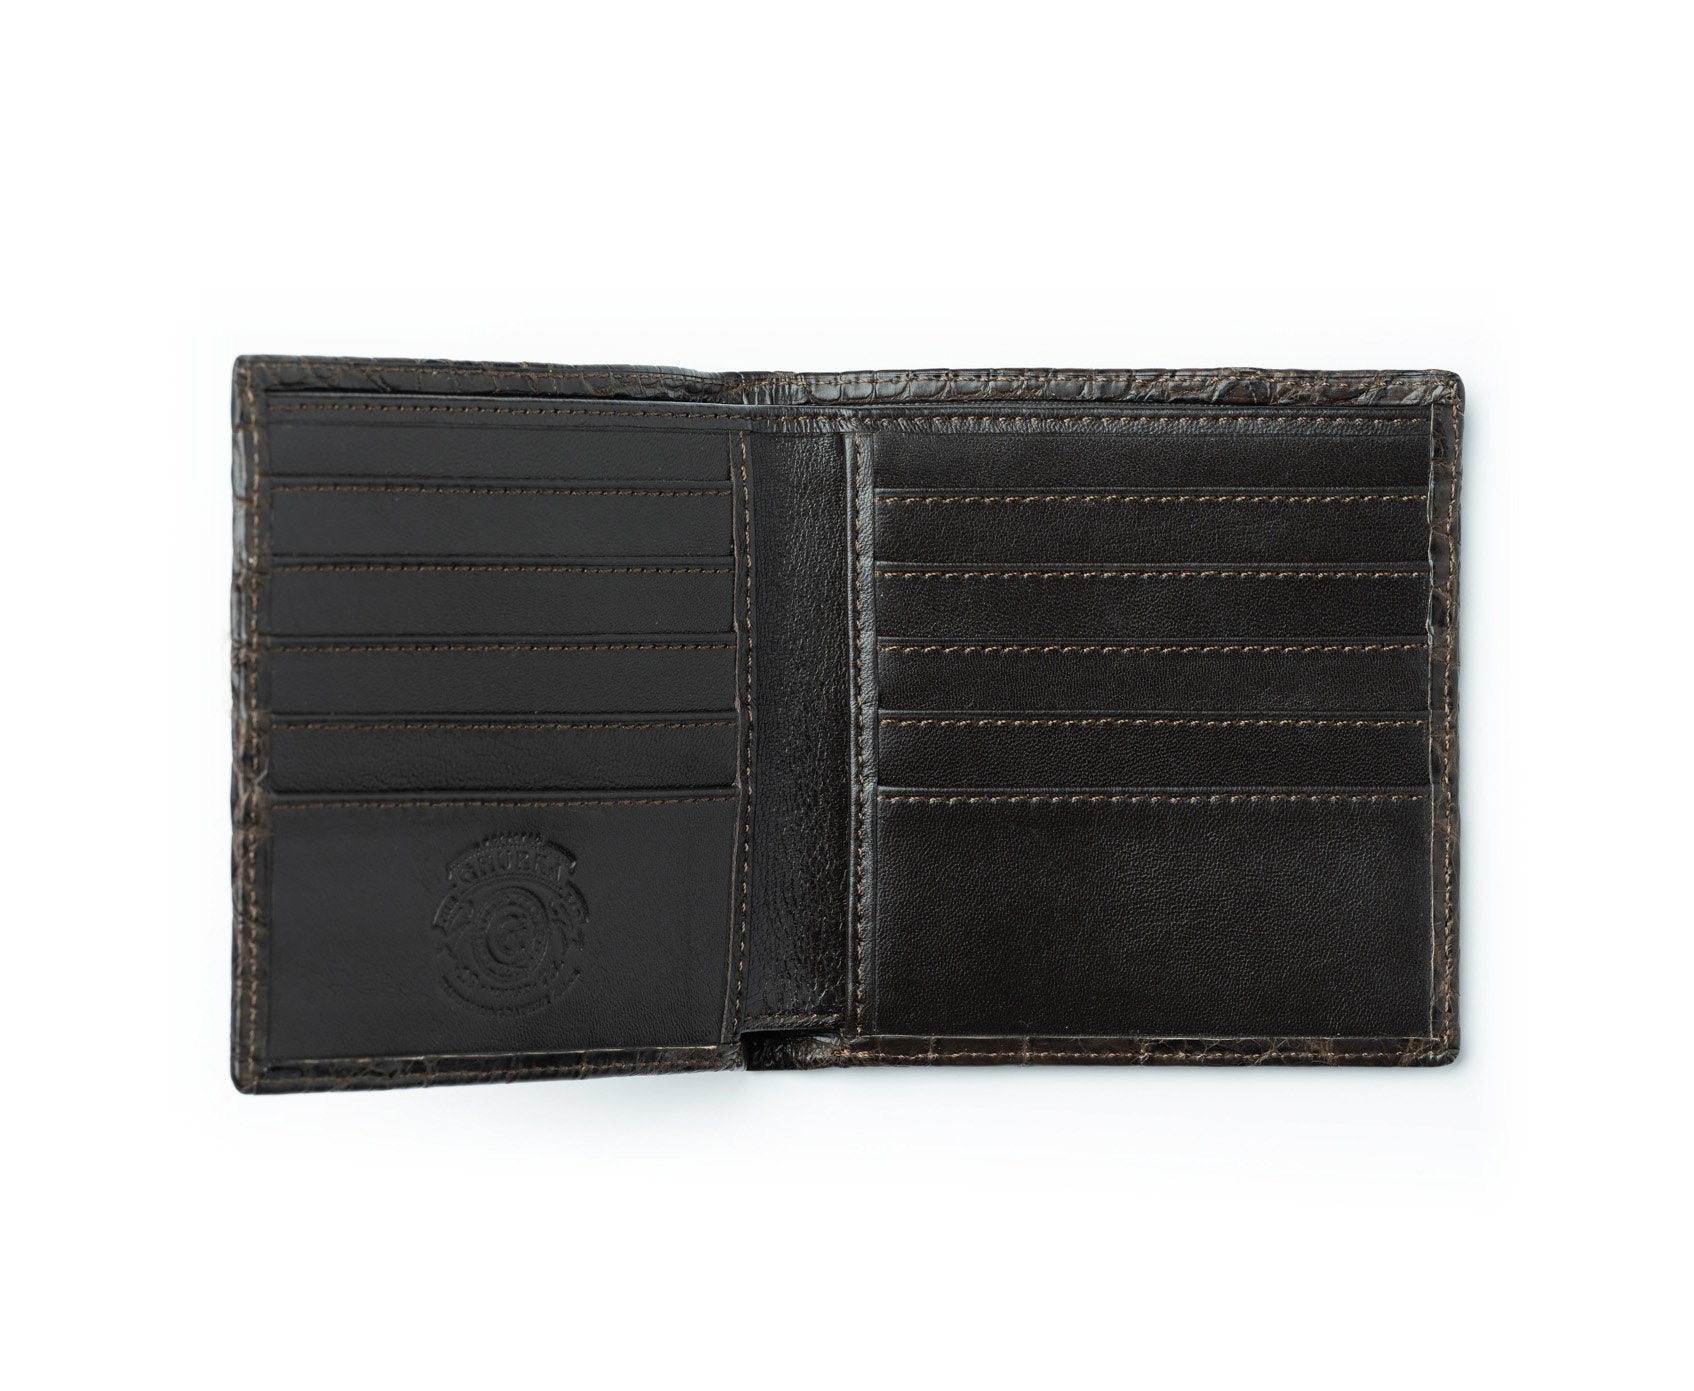 International Wallet No. 104, Walnut Crocodile Wallet